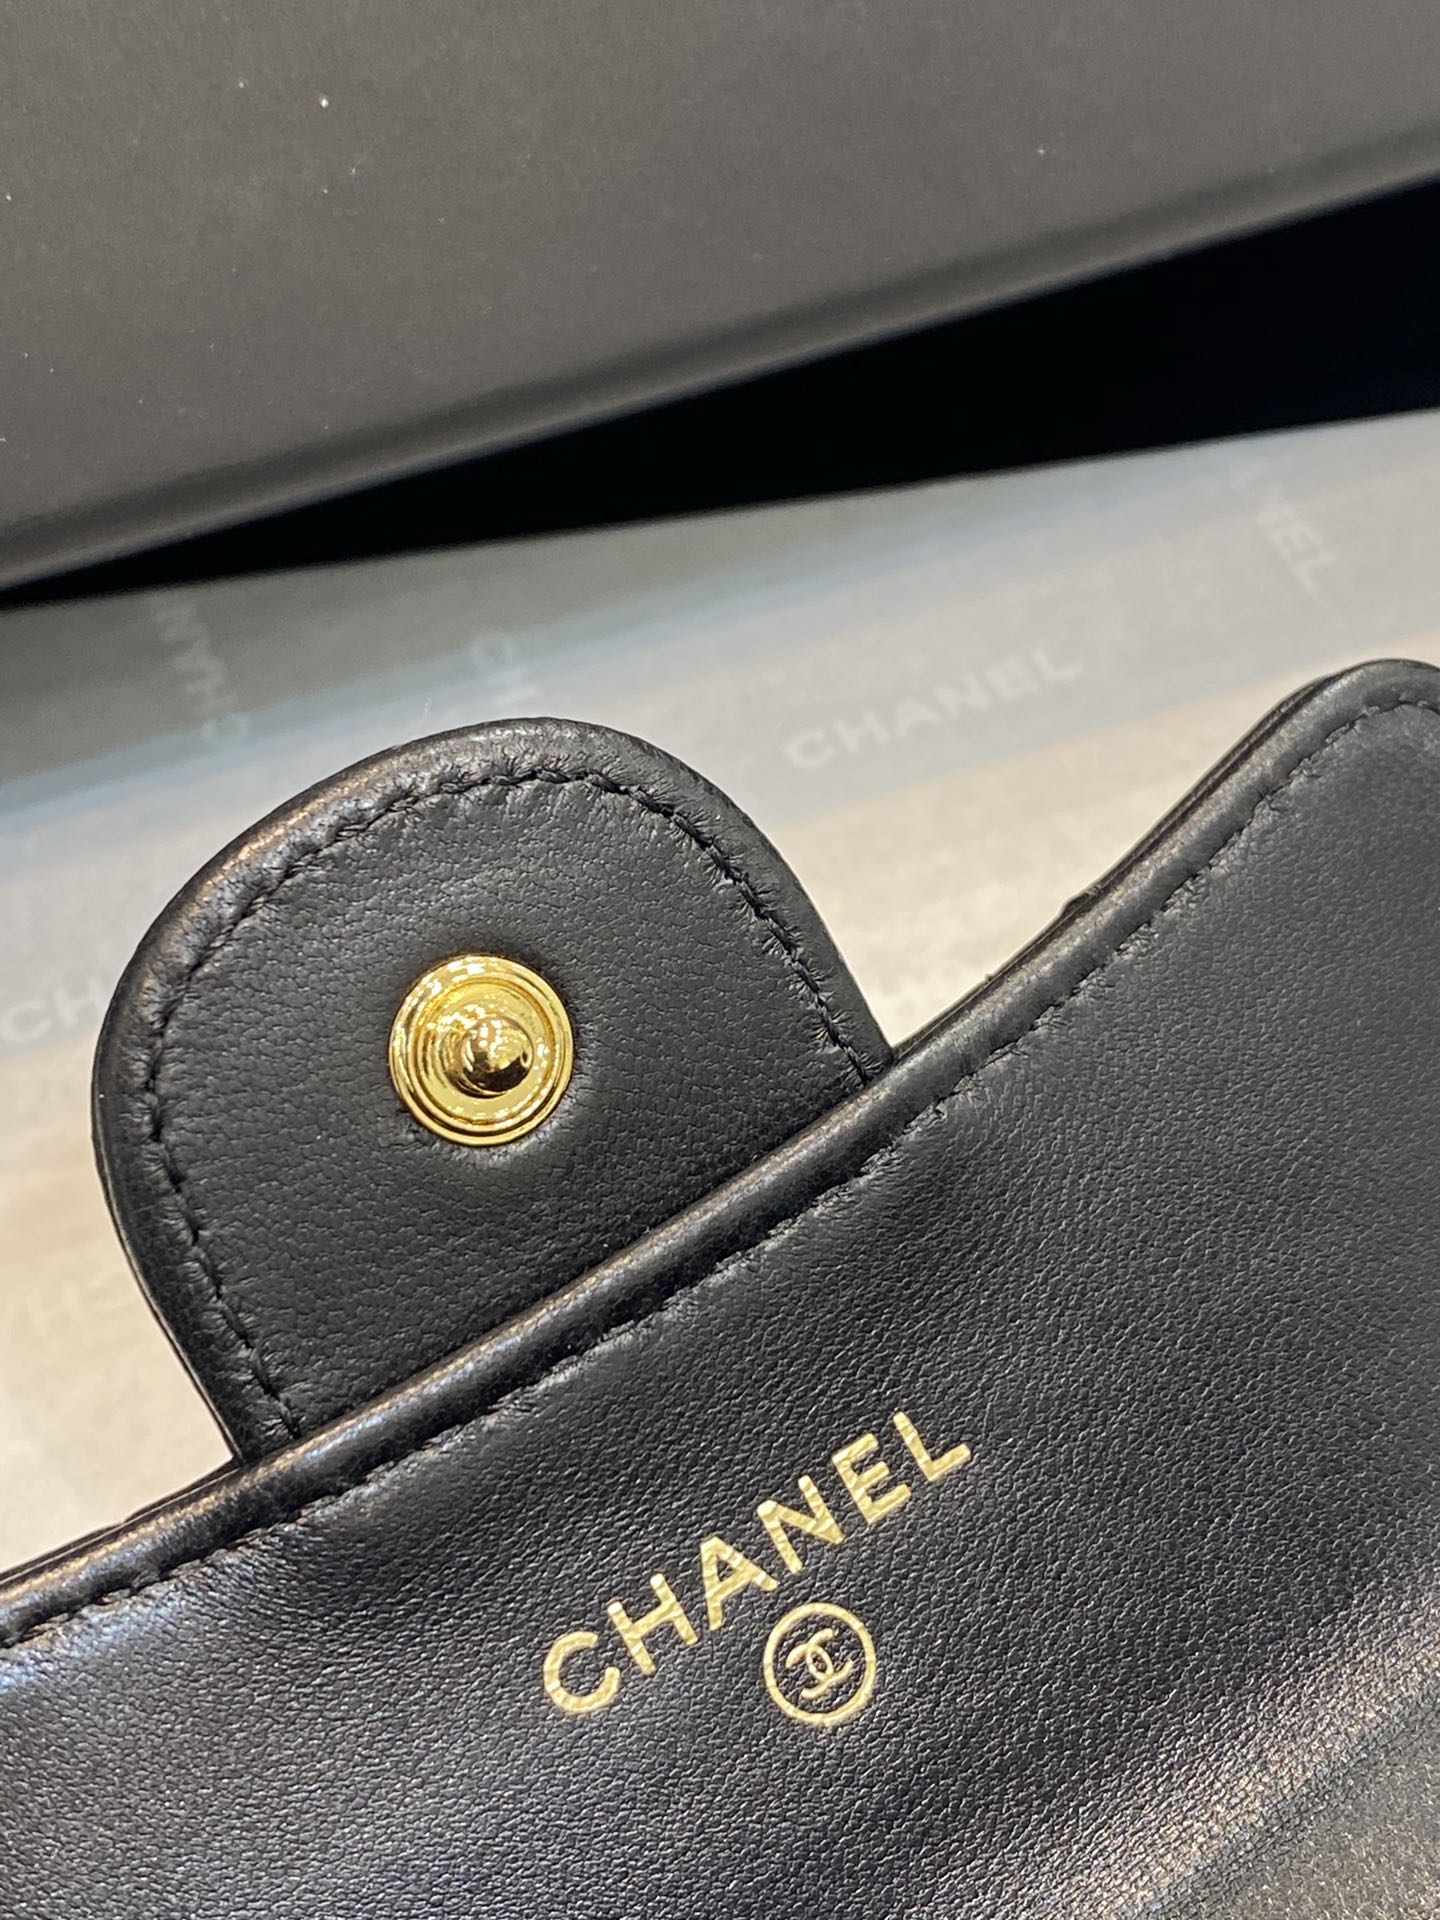 Chanel 2020新款cf卡包 11*8.5*3cm 黑色 小羊皮 金扣